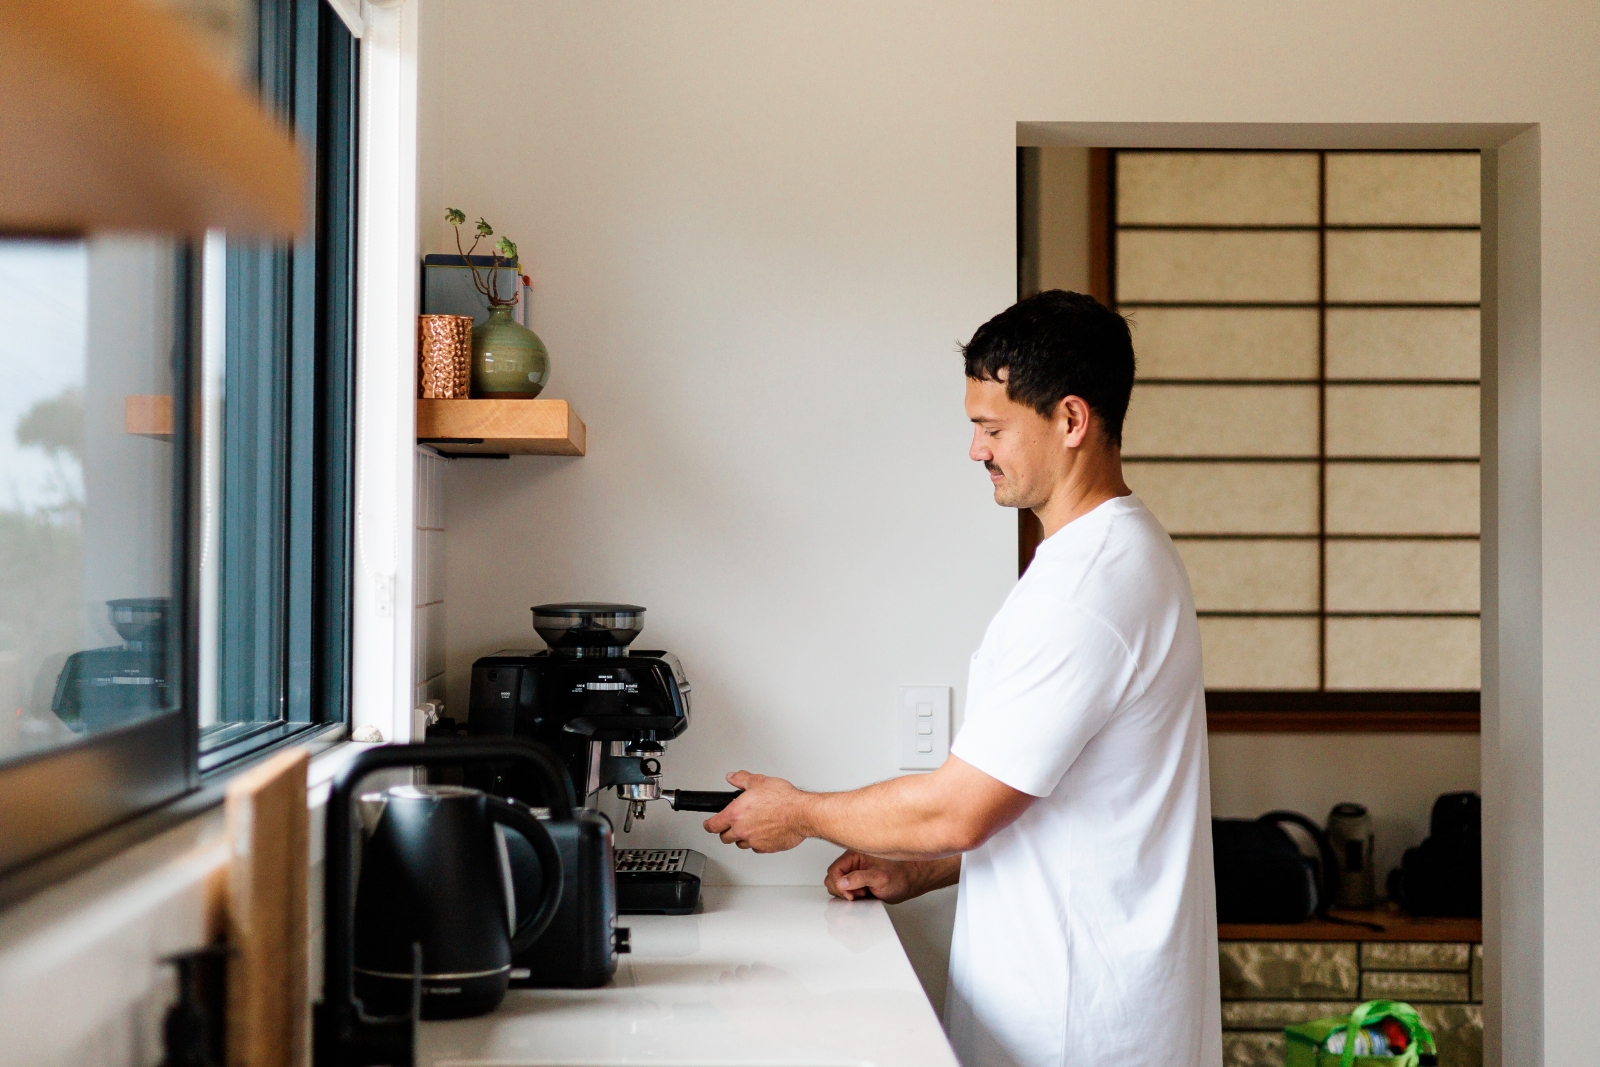 A young Māori man using a home espresso machine in the kitchen.